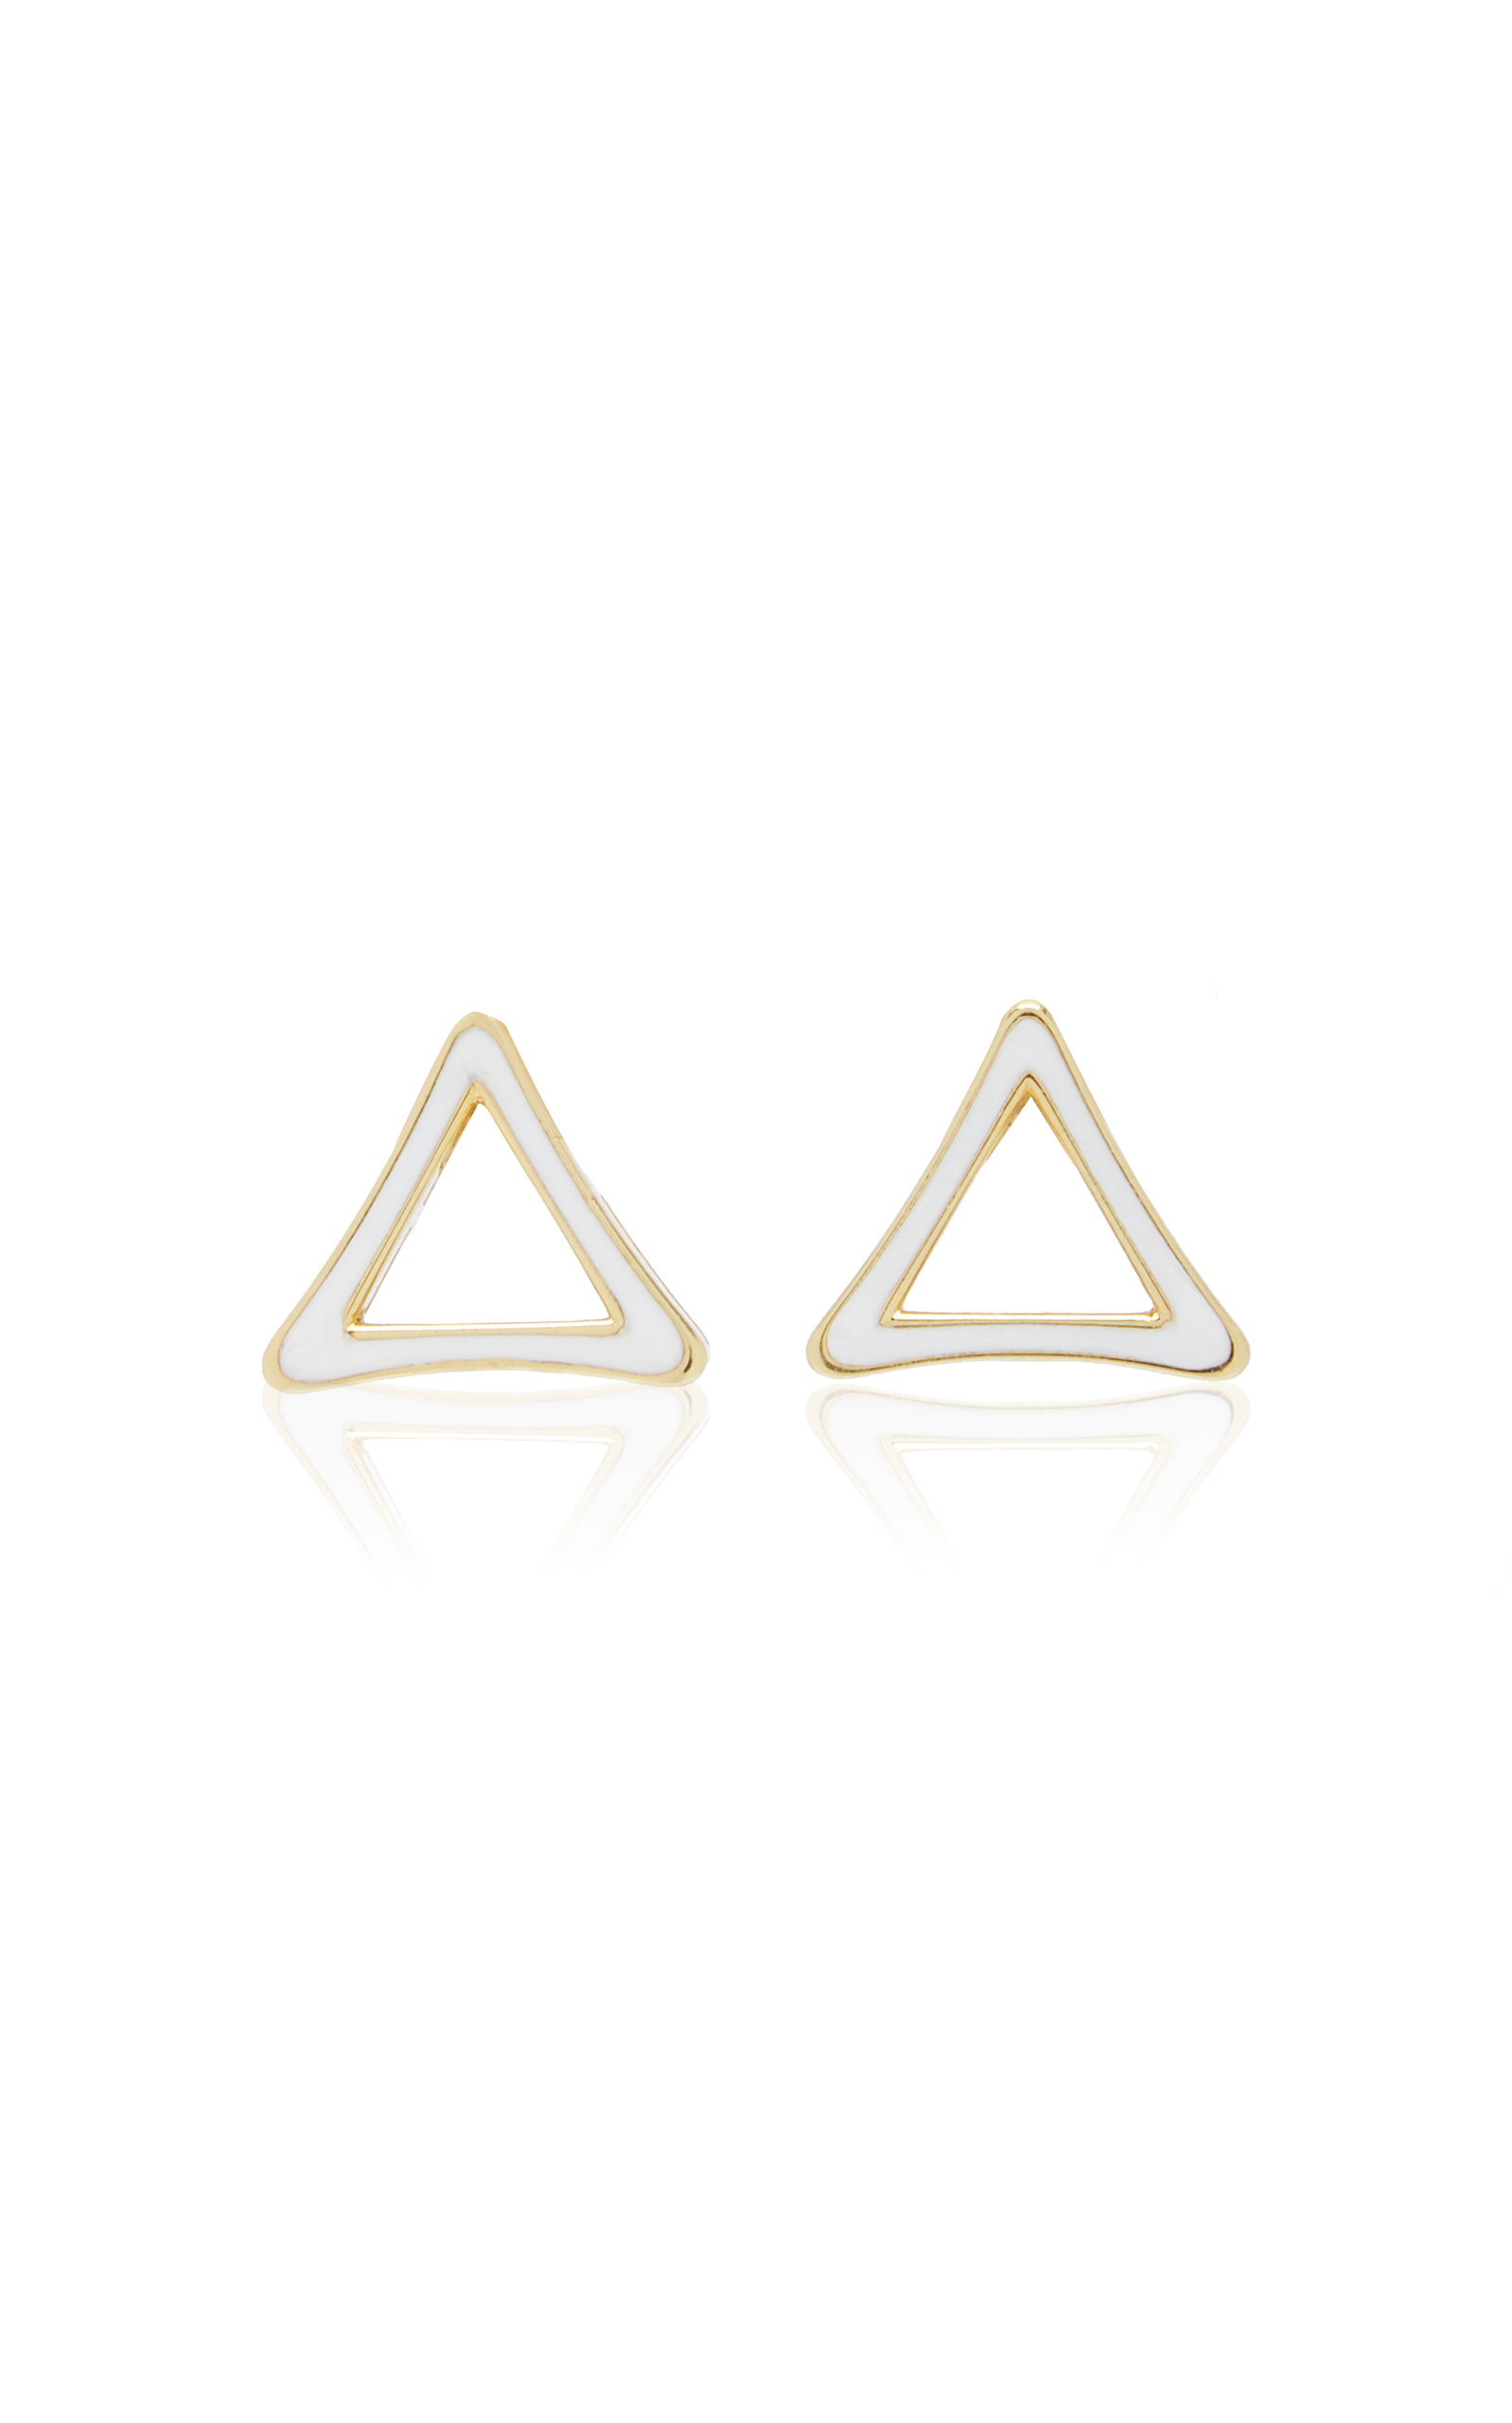 Danielle Marks Women's Triangle Enameled 18k Yellow Gold Earrings